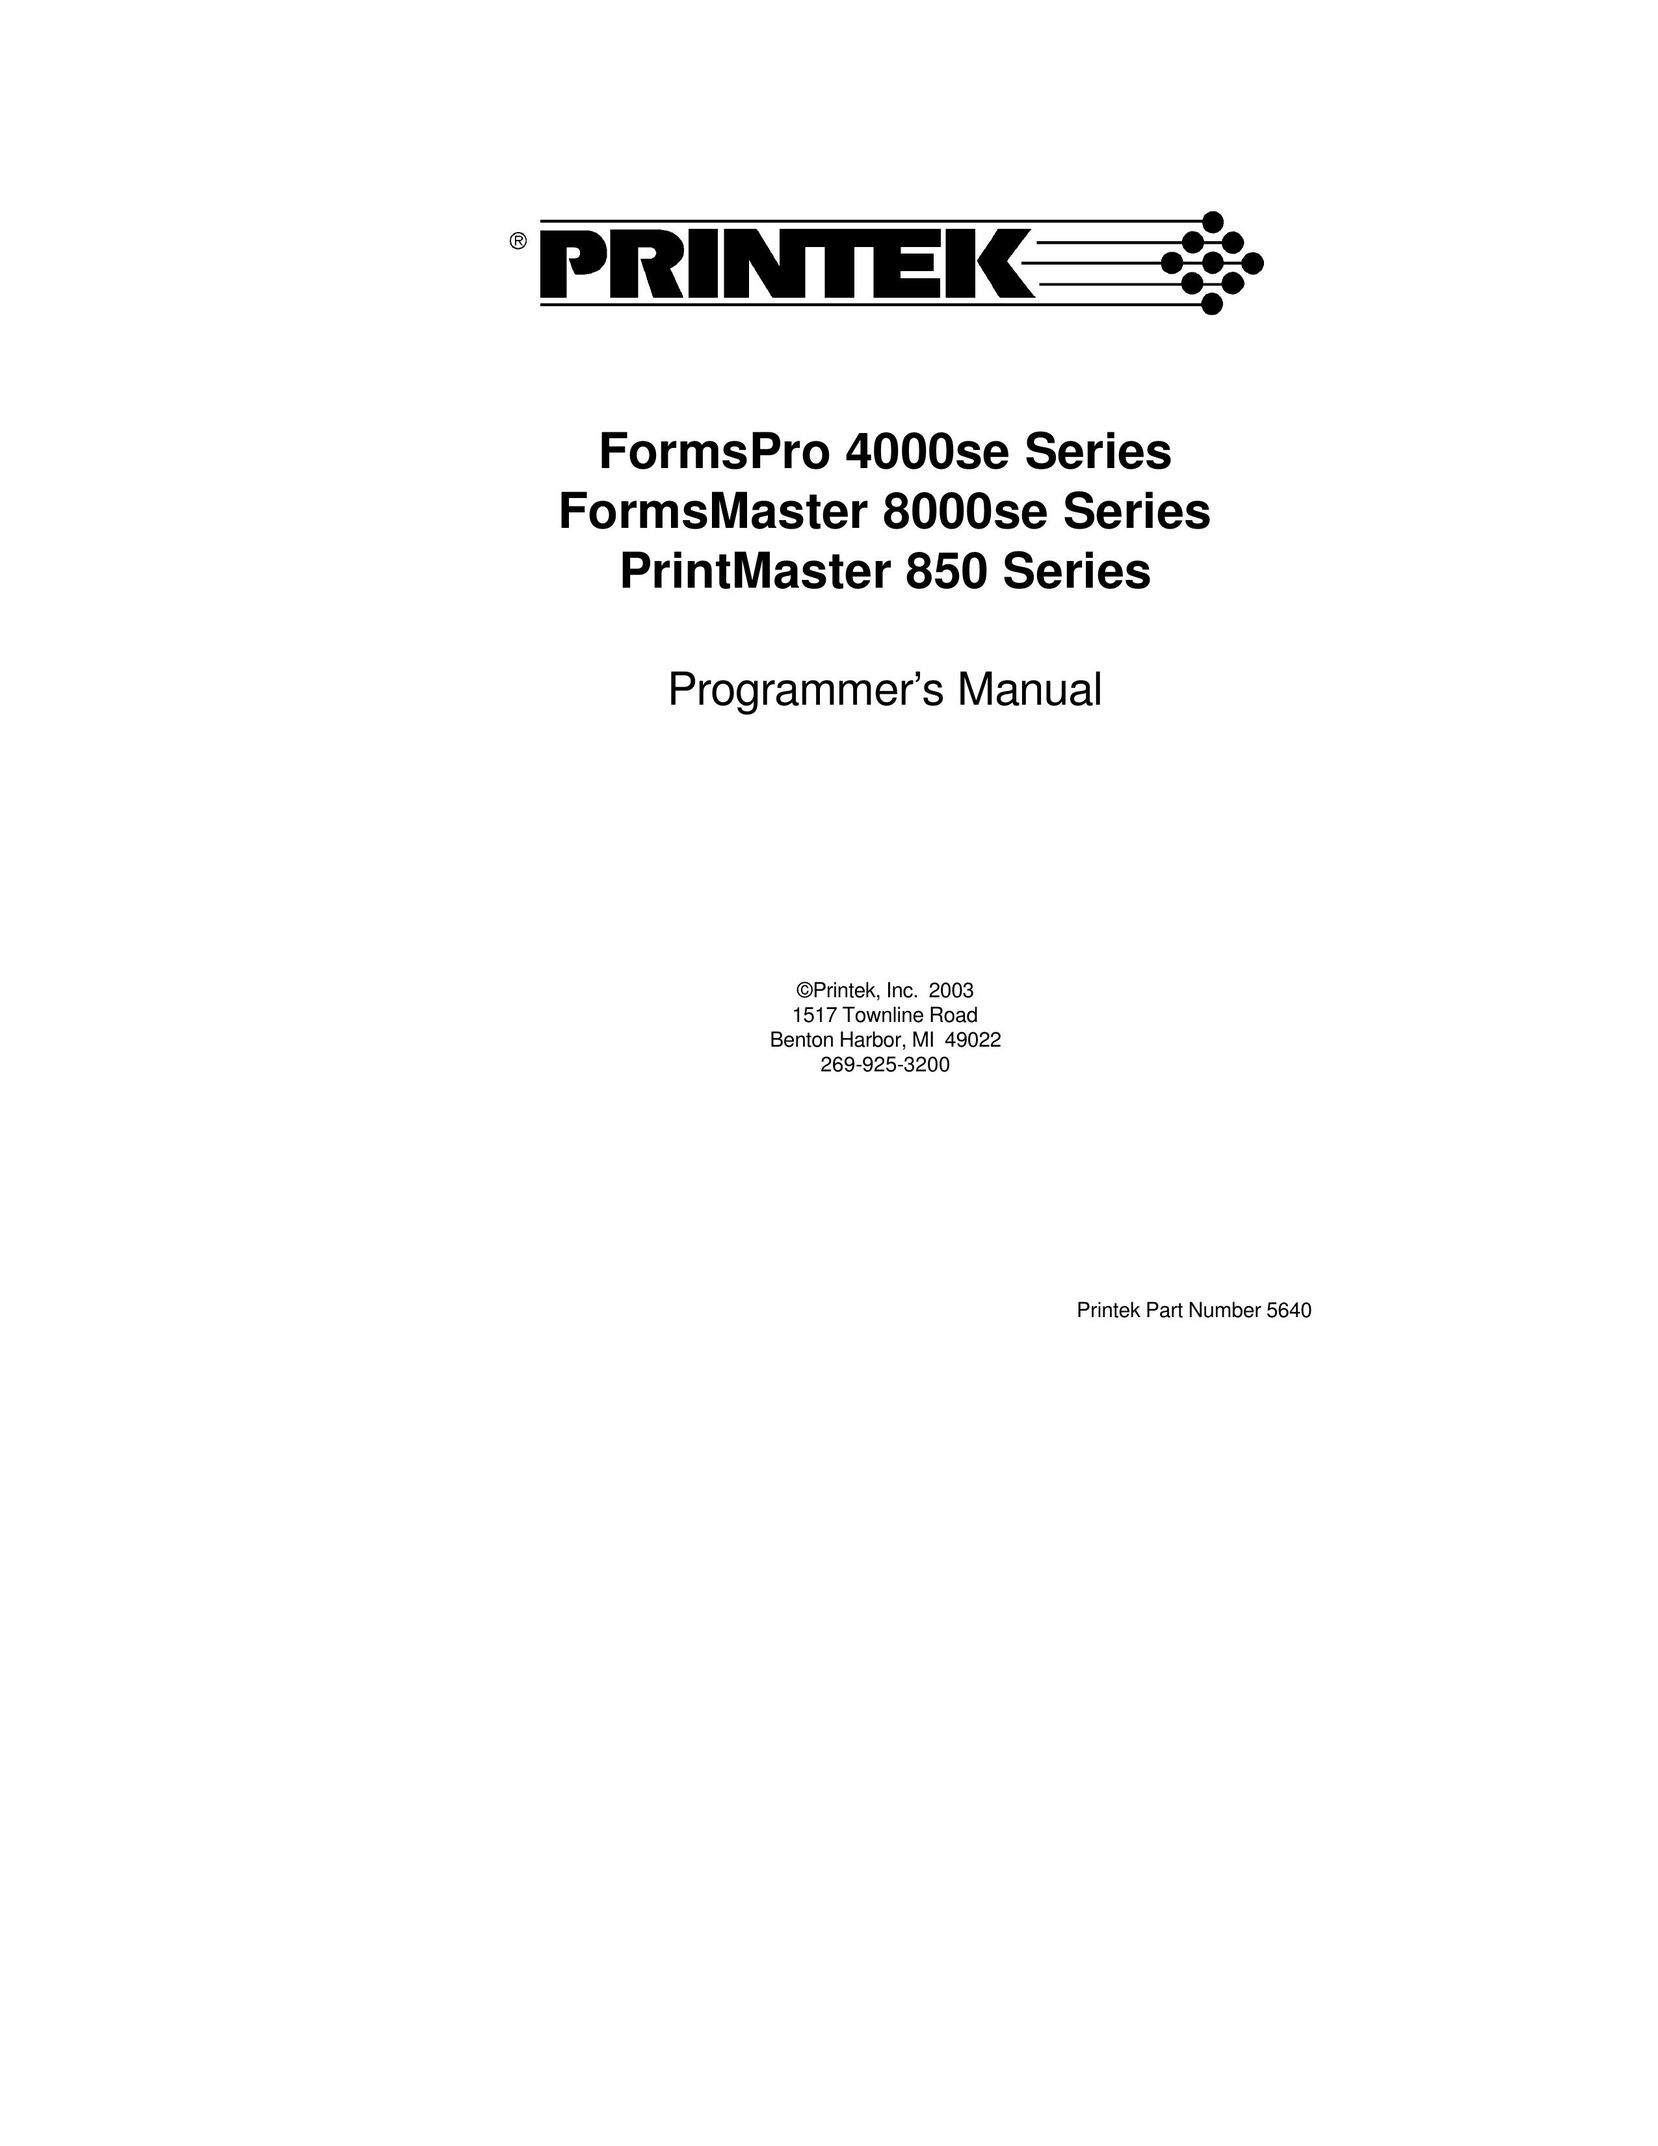 Printek PrintMaster 850 Series Printer User Manual